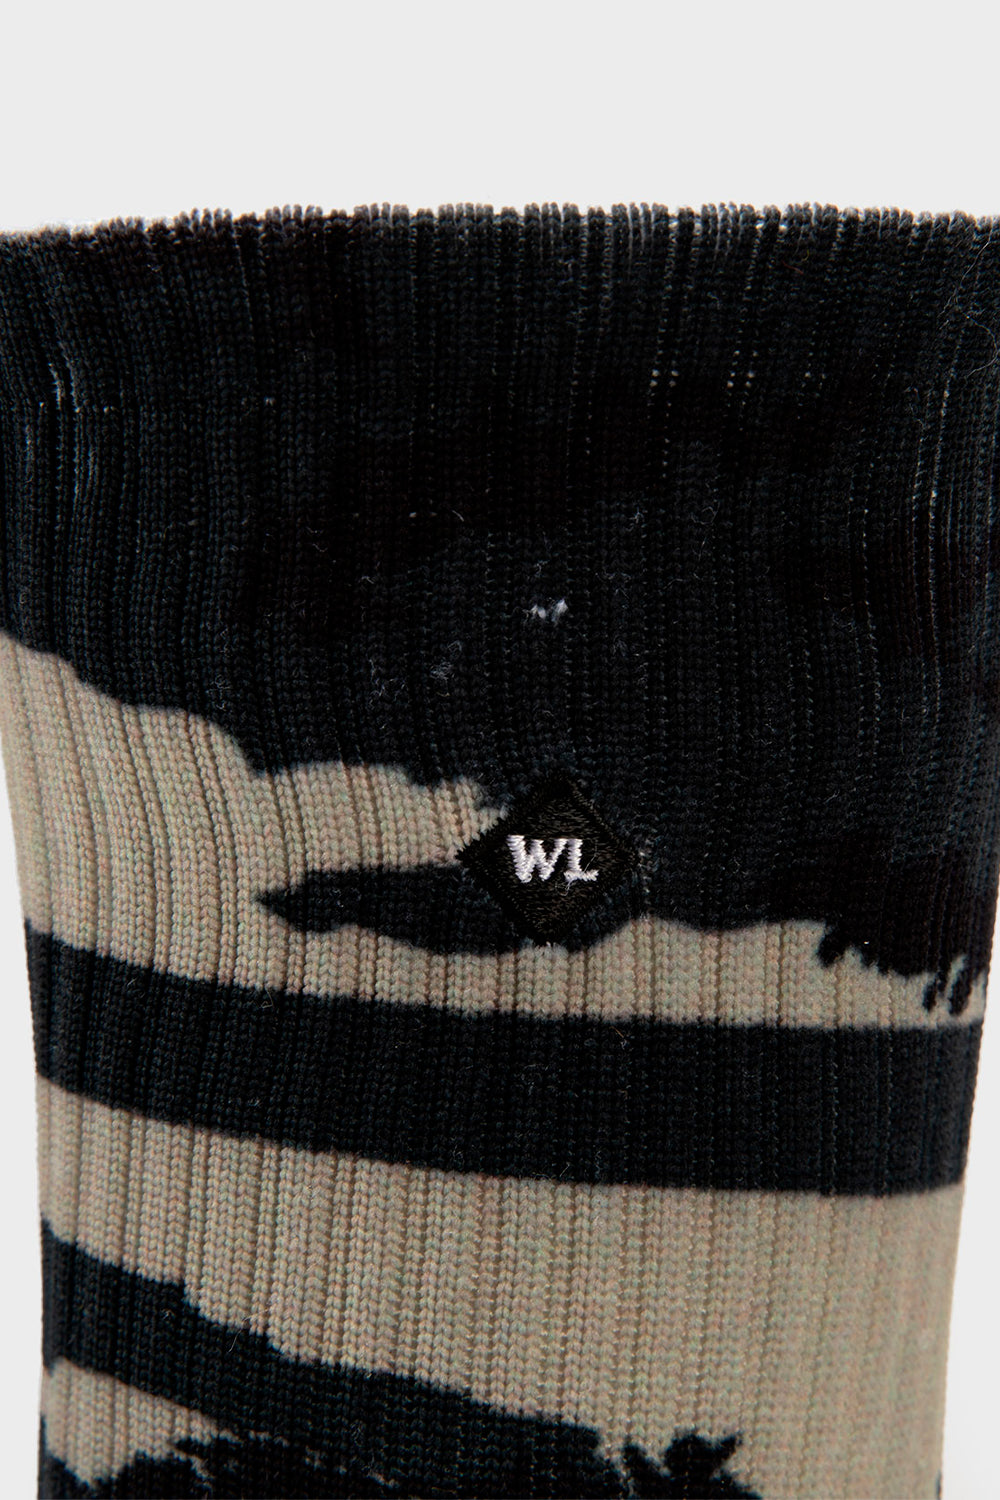 Calcetines de lana merino Omar, Wilier Triestina